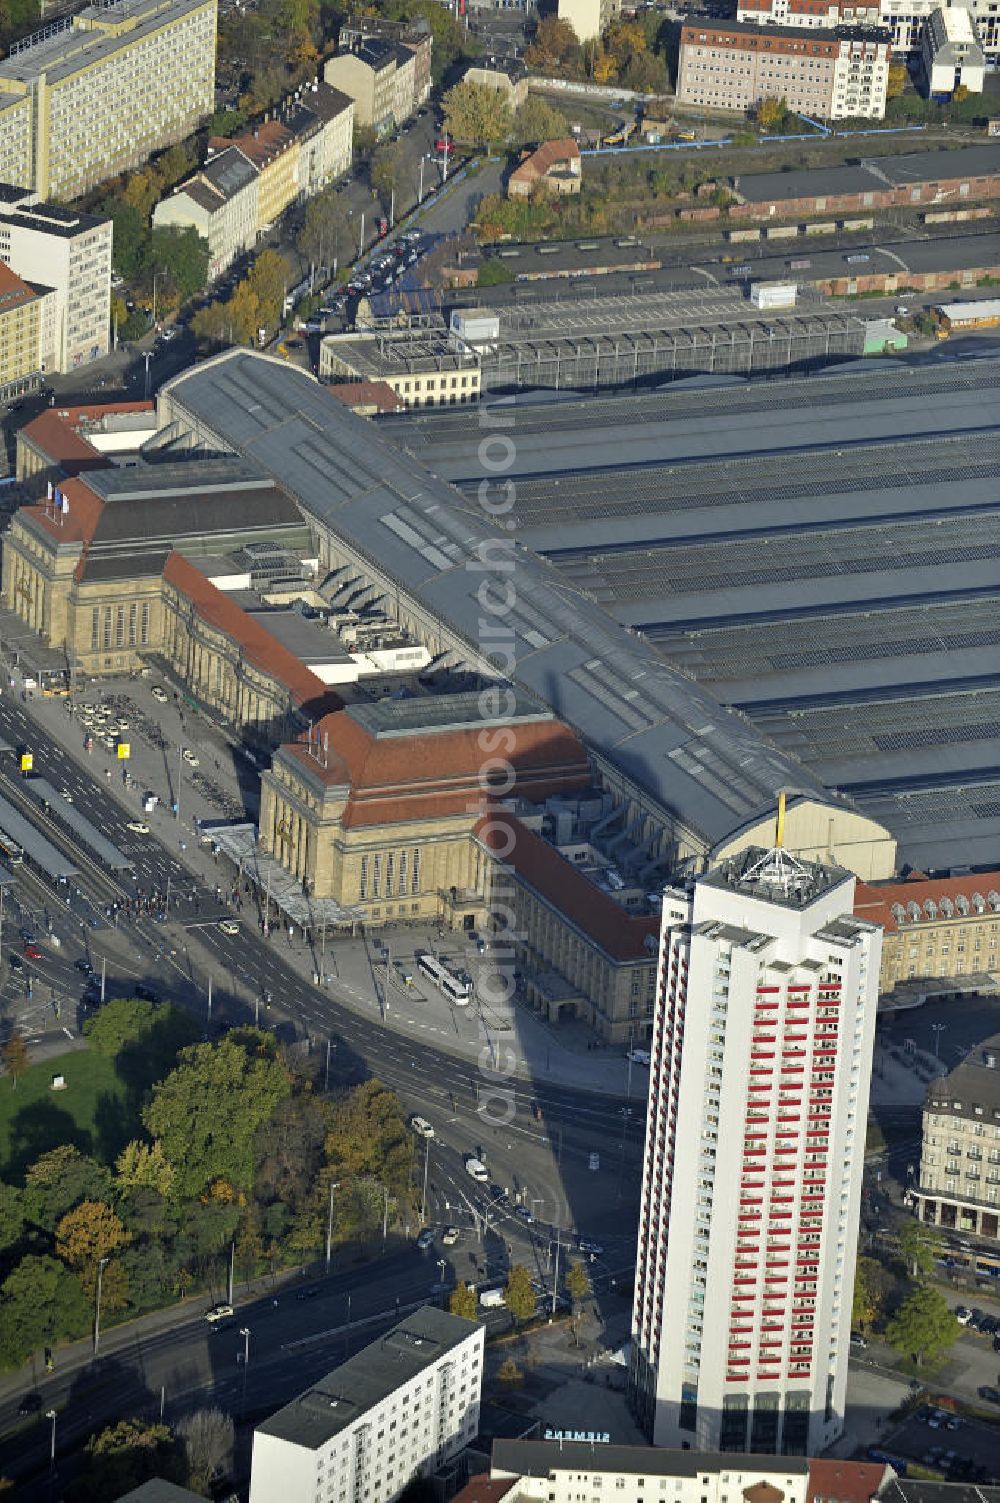 Aerial image Leipzig - Der Hauptbahnhof Leipzig mit dem Einkaufszentrum in den Promenaden des Bahnhofs und das Wintergartenhochhaus. The main station of Leipzig with the Promenade shopping center and the Wintergartenhochhaus.